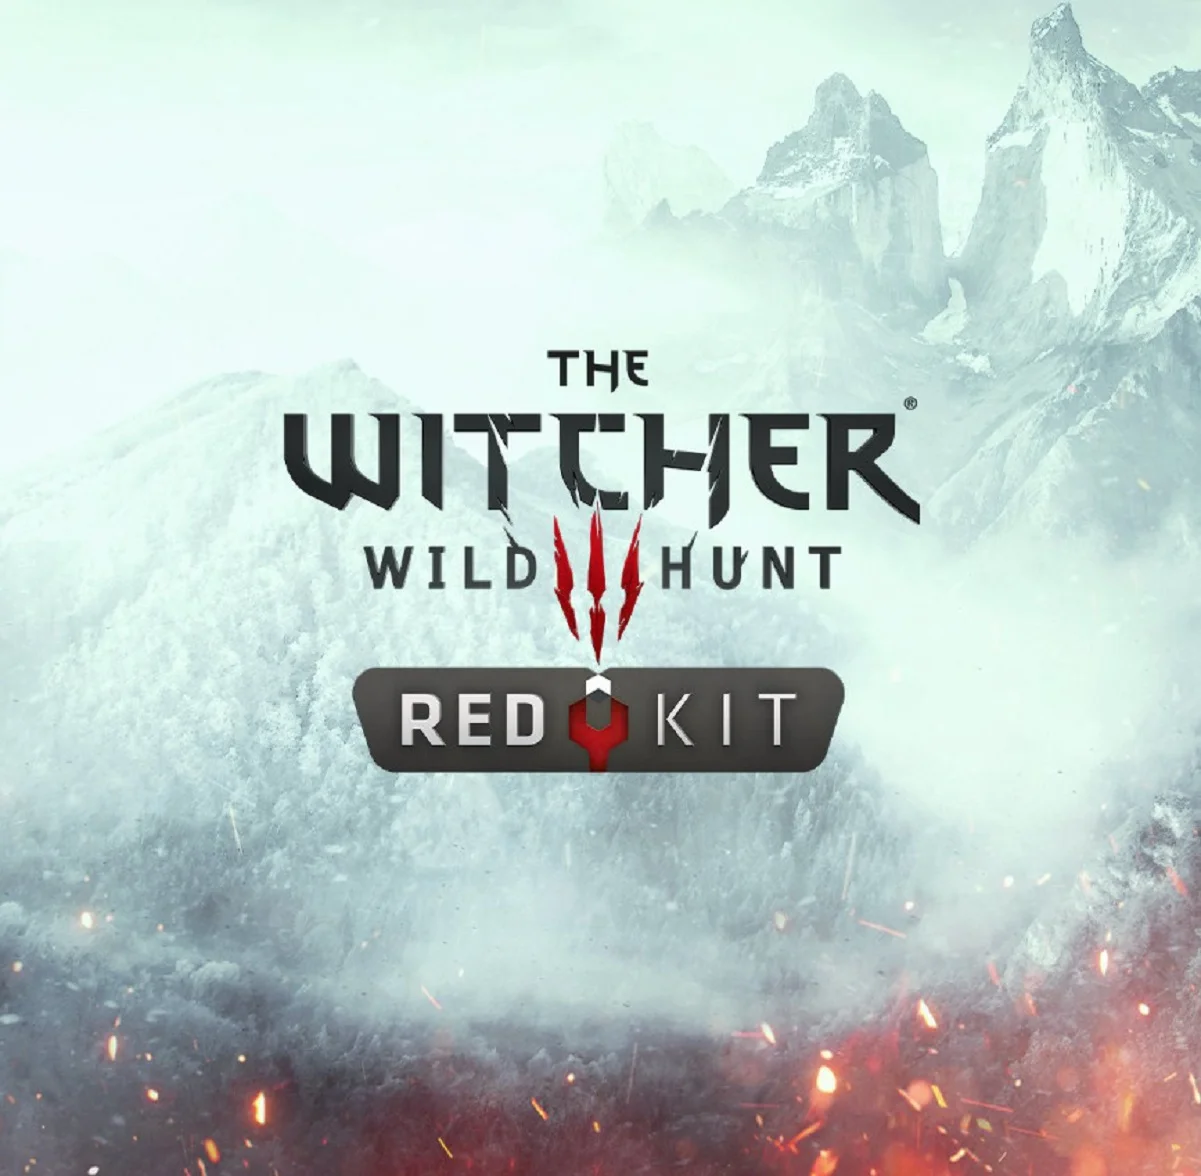 Бесплатный редактор модов The Witcher 3 REDkit для «Ведьмака 3» выйдет 21 мая - фото 1